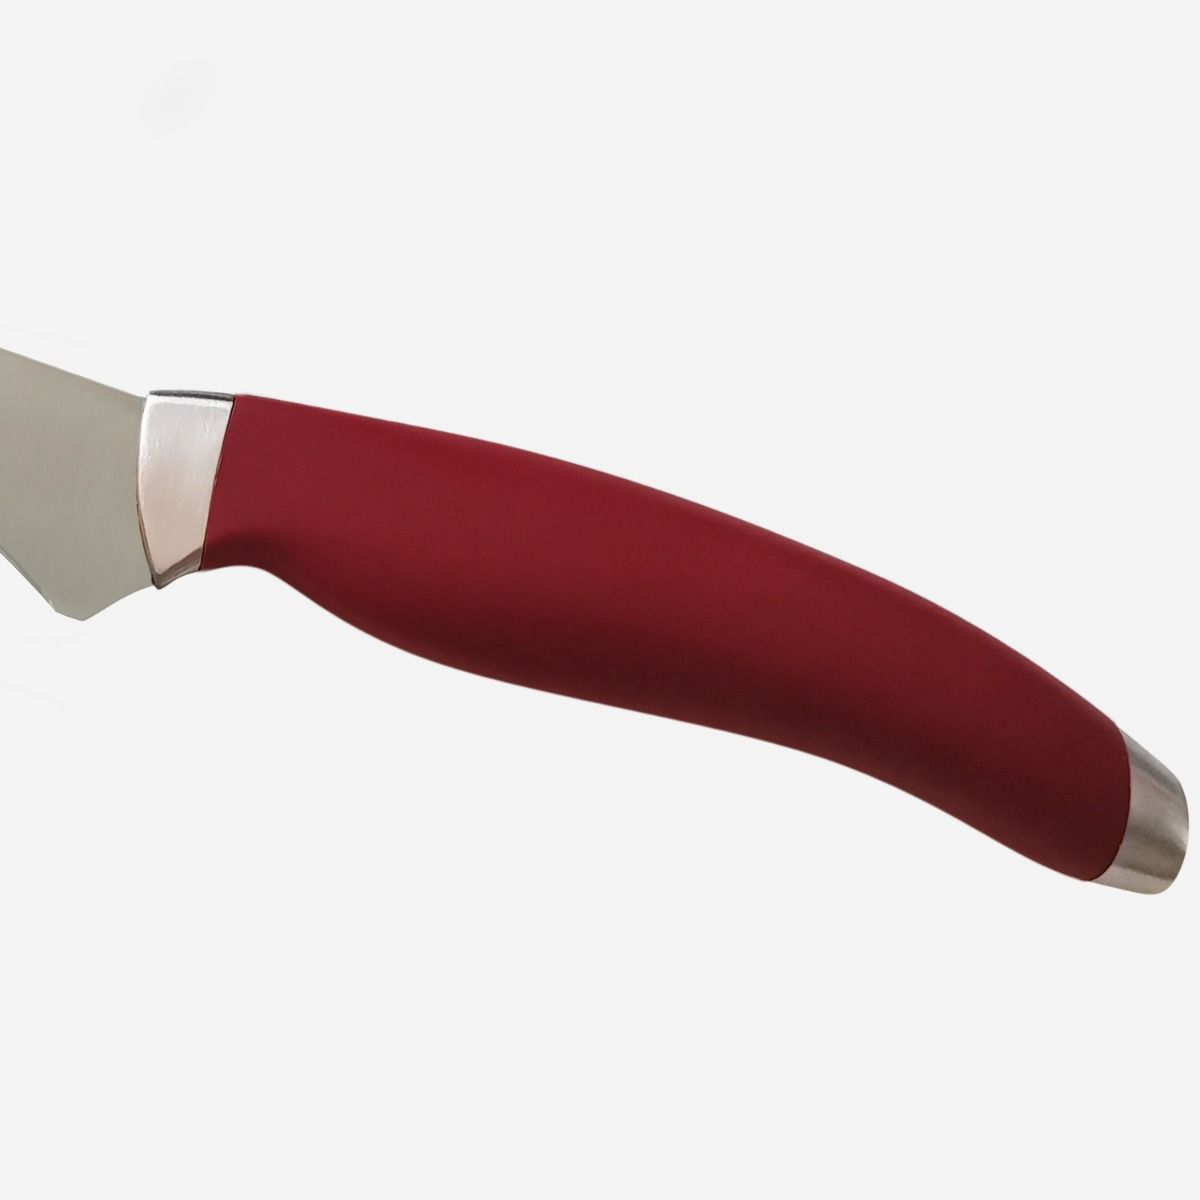 Ham Knife 28 cm  Stainless Steel Berkel Teknica Handle Red Resin